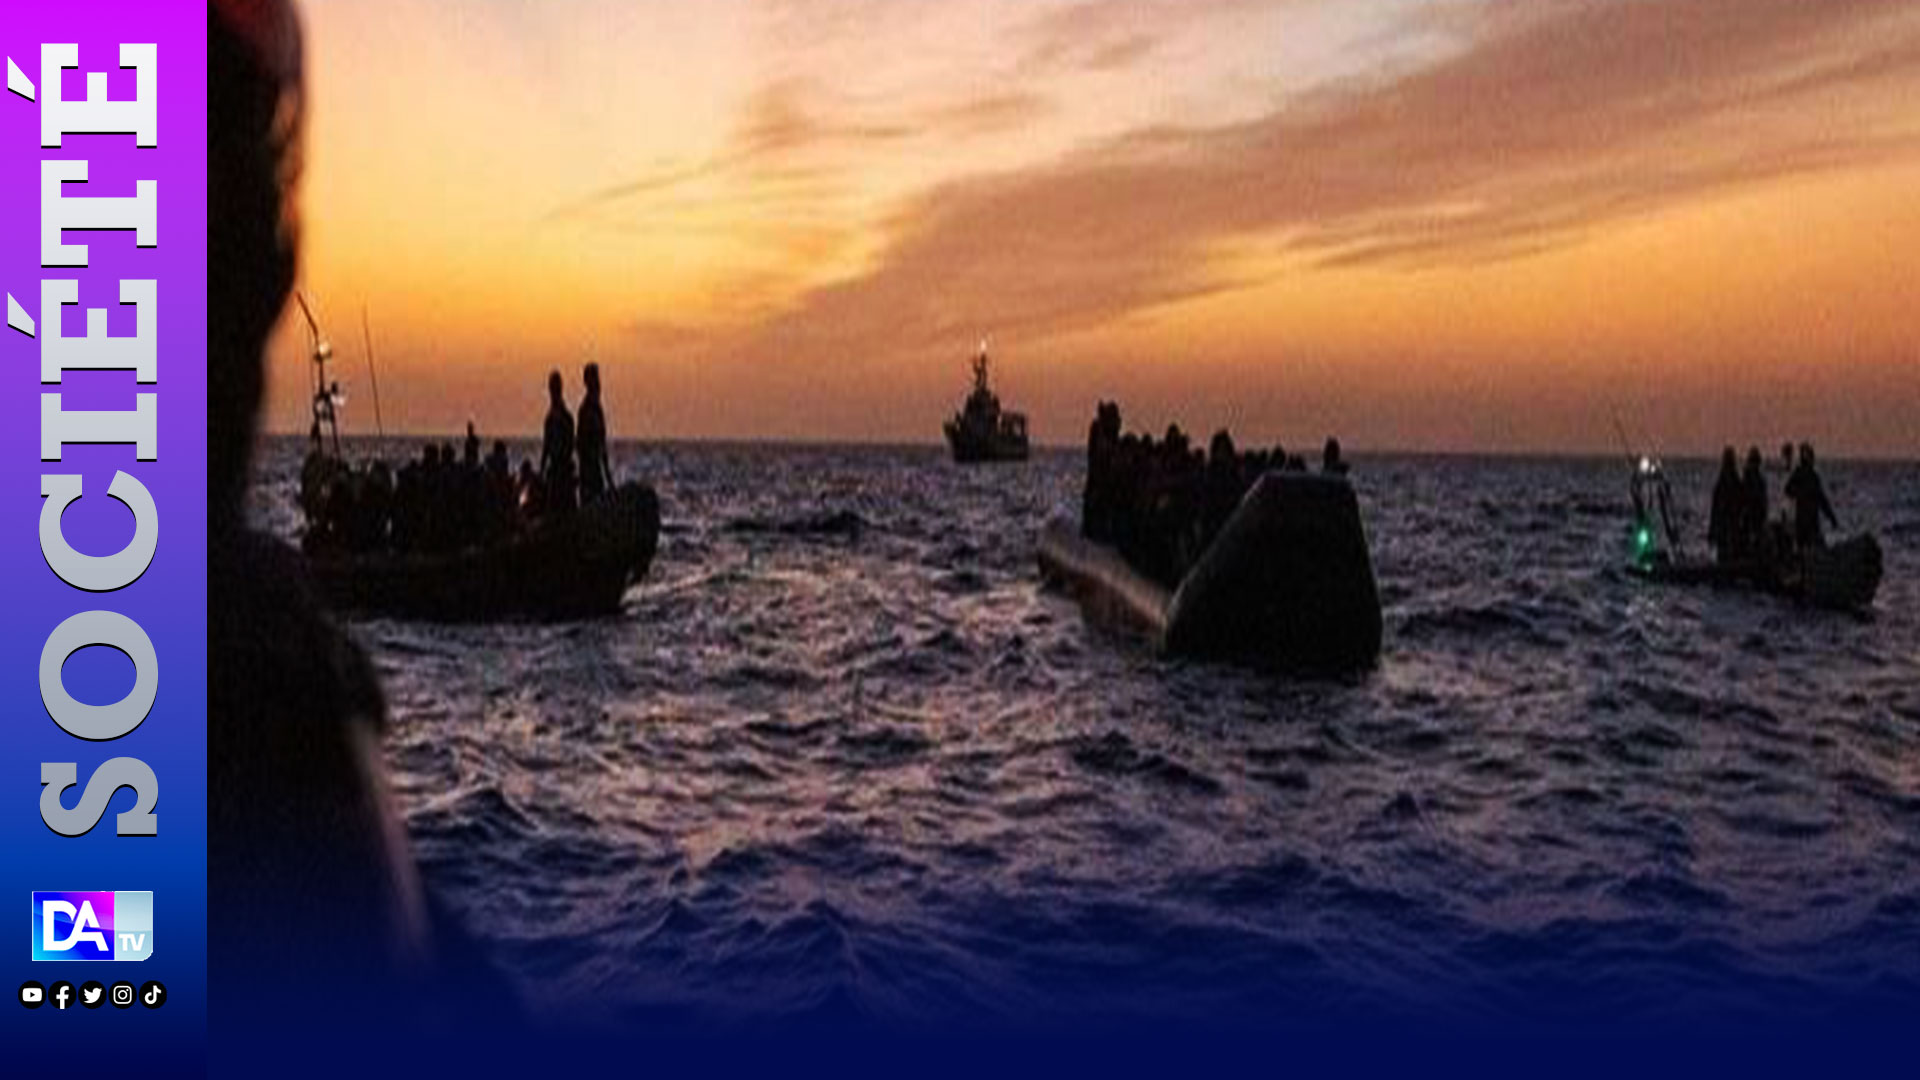 Chavirement d’une pirogue au large des côtes Cap-verdiennes : 7 corps sans vie déjà repêchés près des lieux du drame…